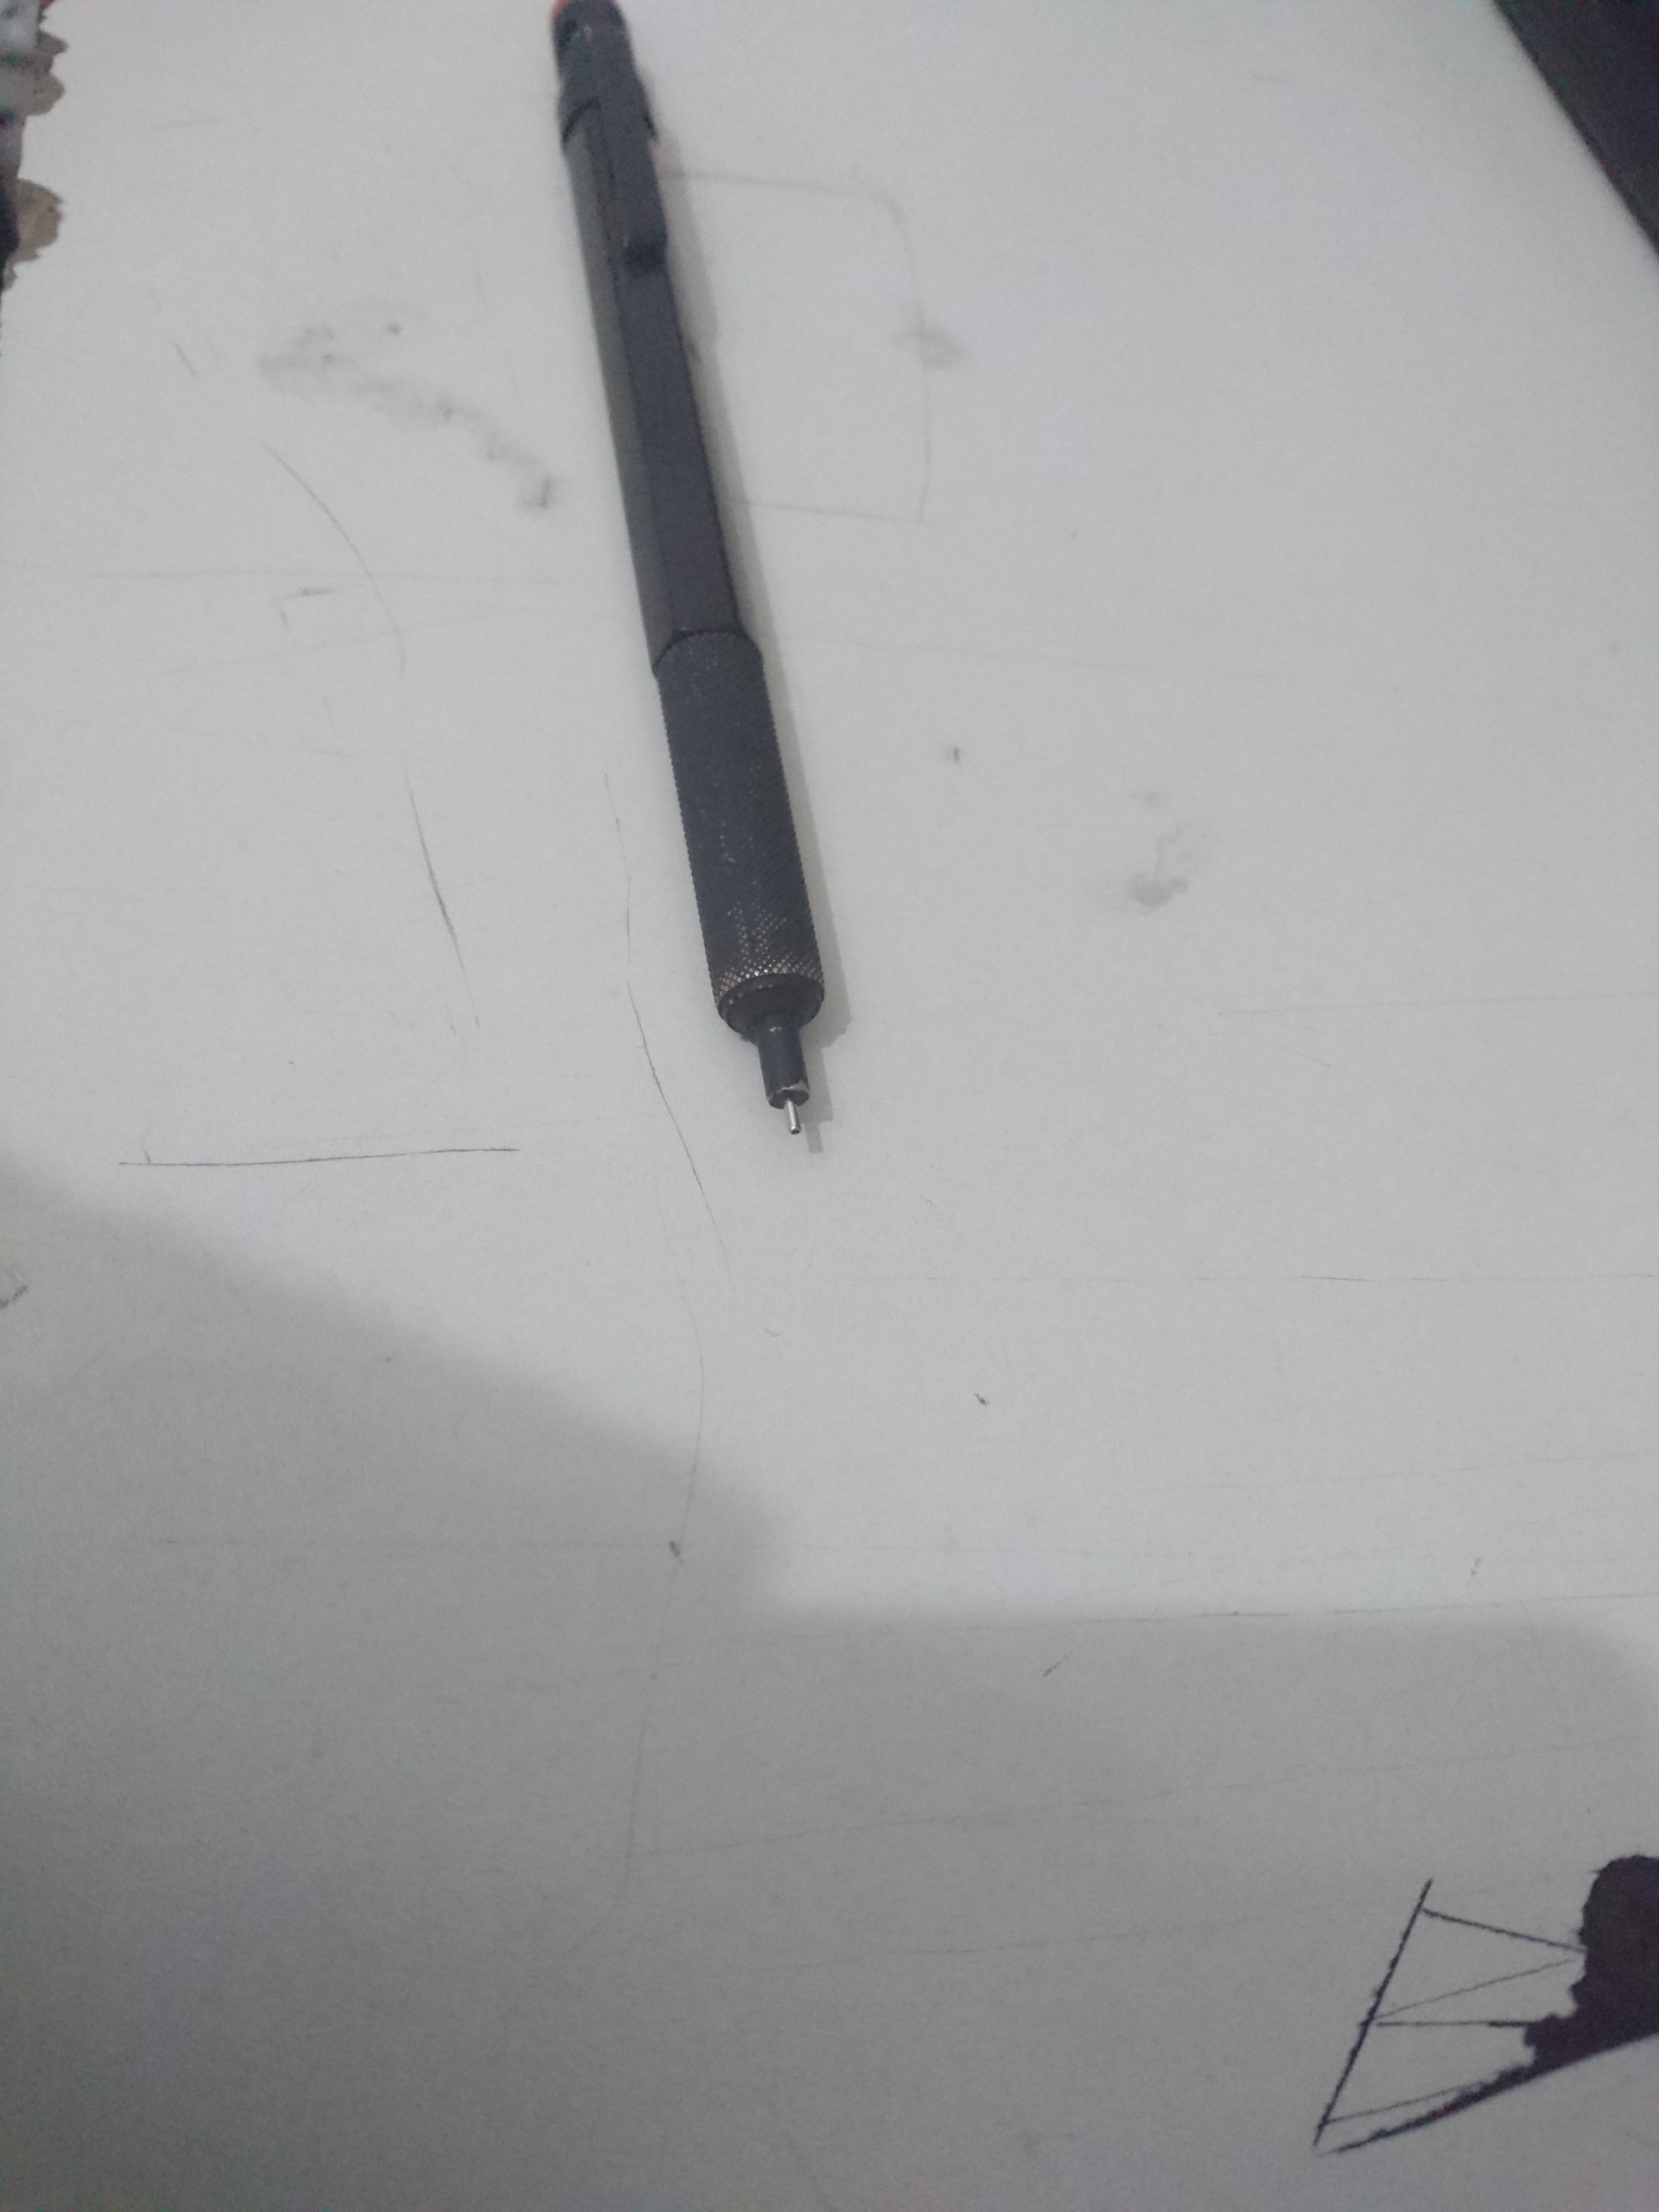  Kalemimin ucu eğildi nasıl düzeltebilirim